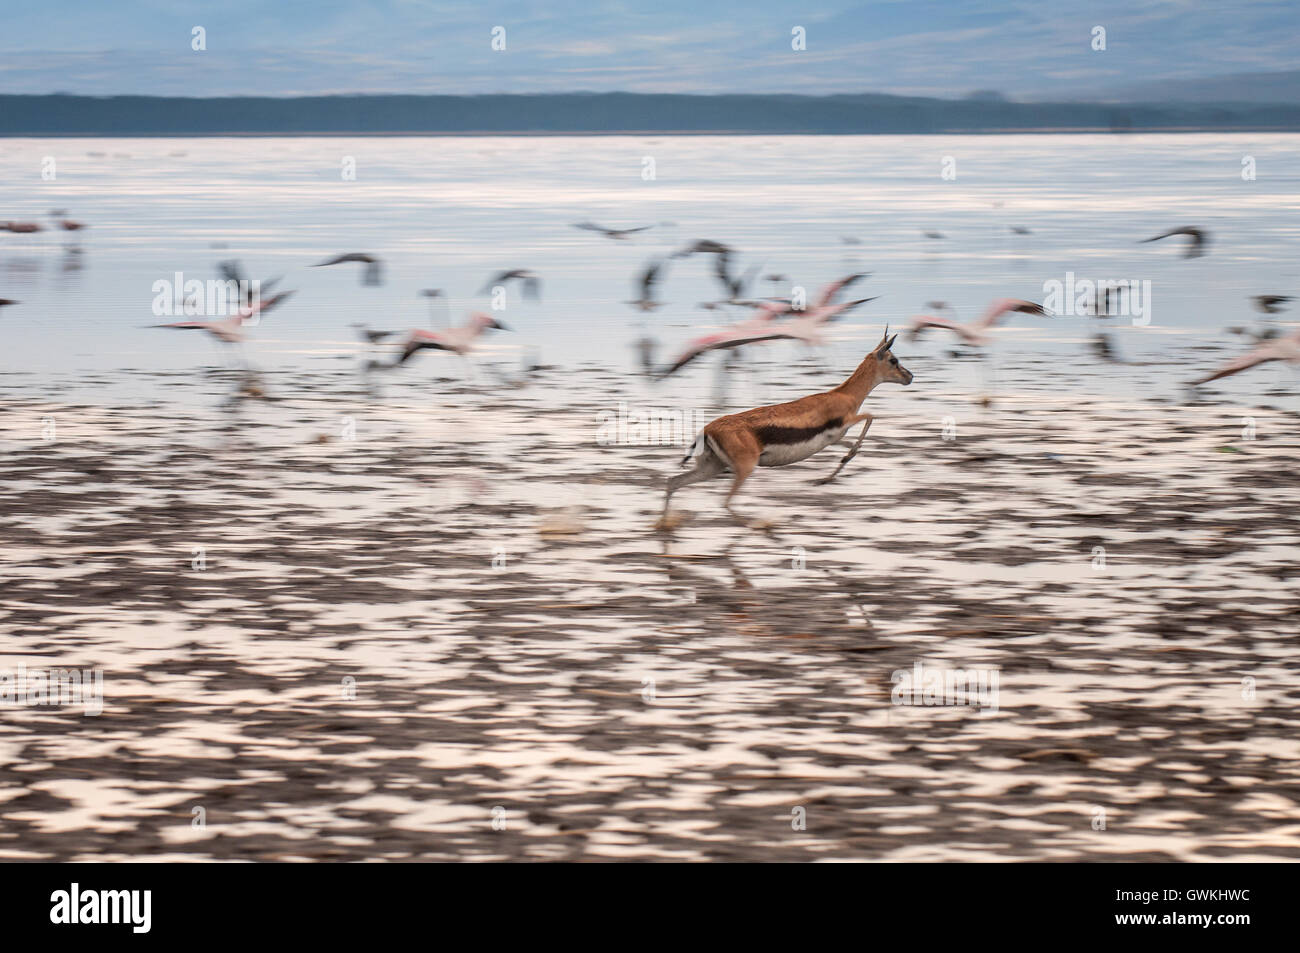 Gazelle running through the lake with flamingos. Stock Photo